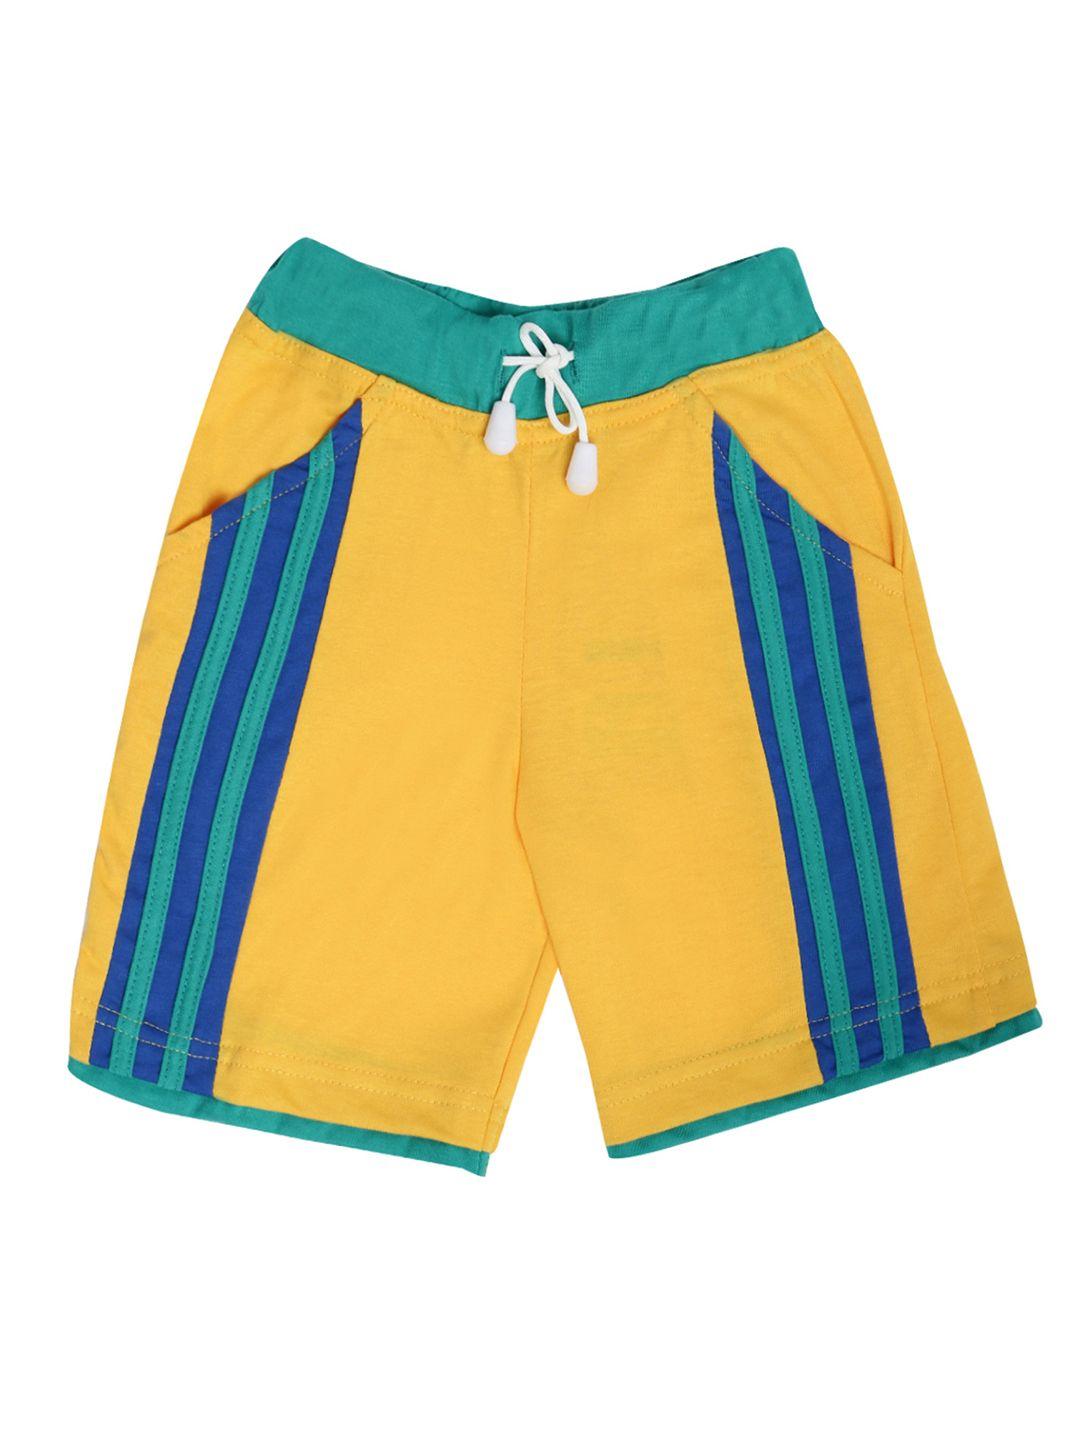 dollar champion kidswear boys yellow solid regular fit regular shorts